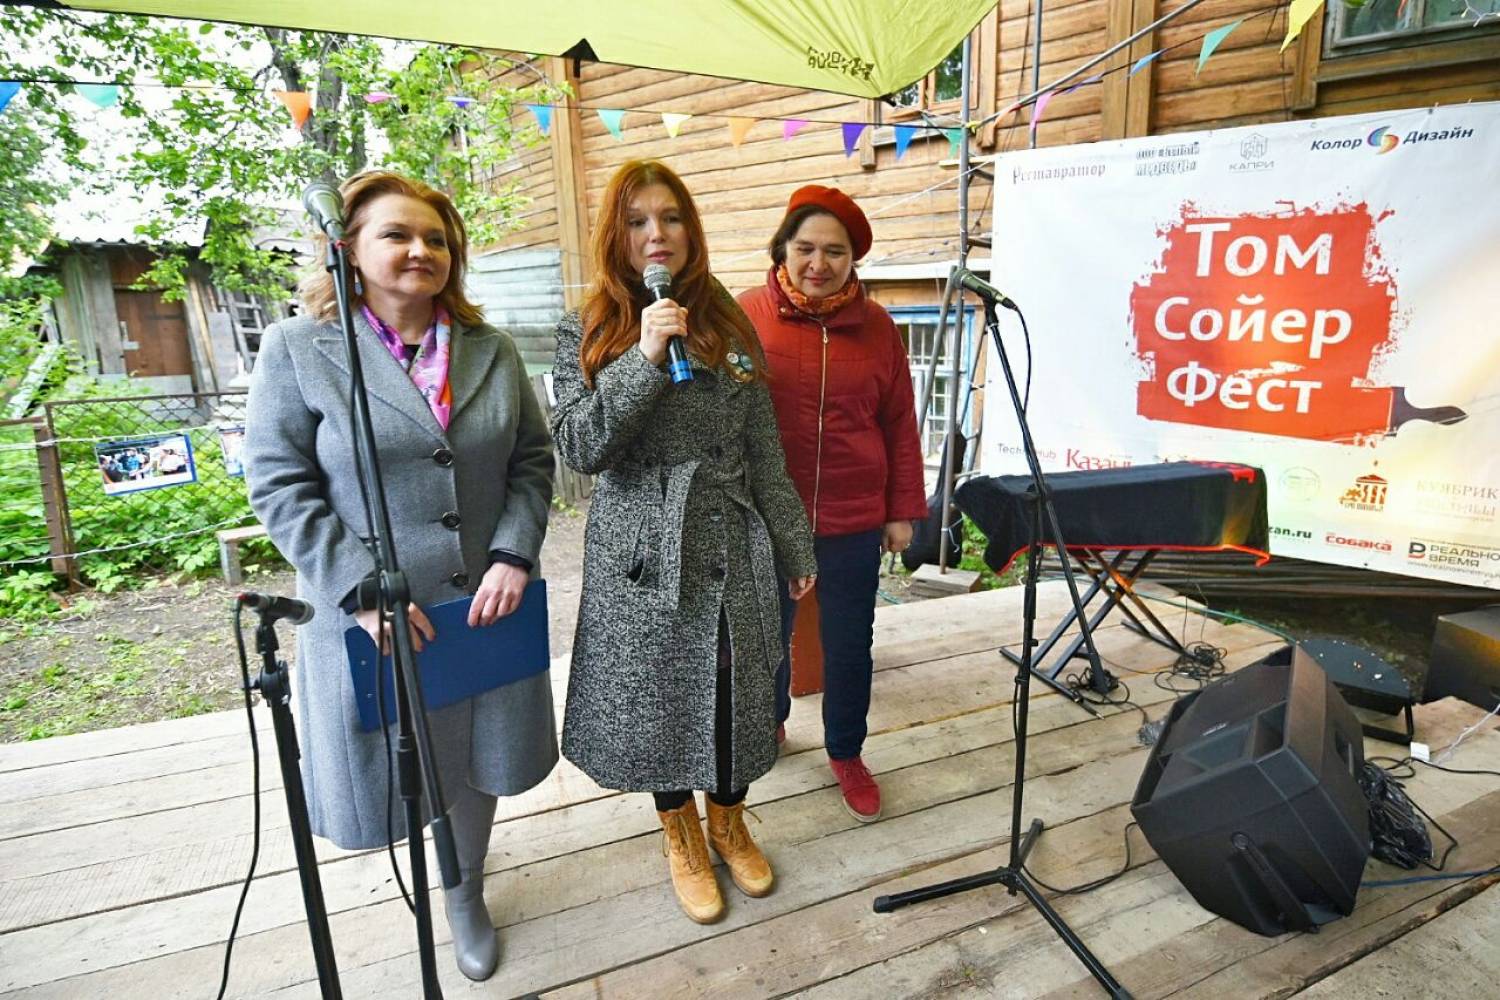 6 домов, 150 волонтеров и много песен под гитару: в Казани начался «Том Сойер Фест»